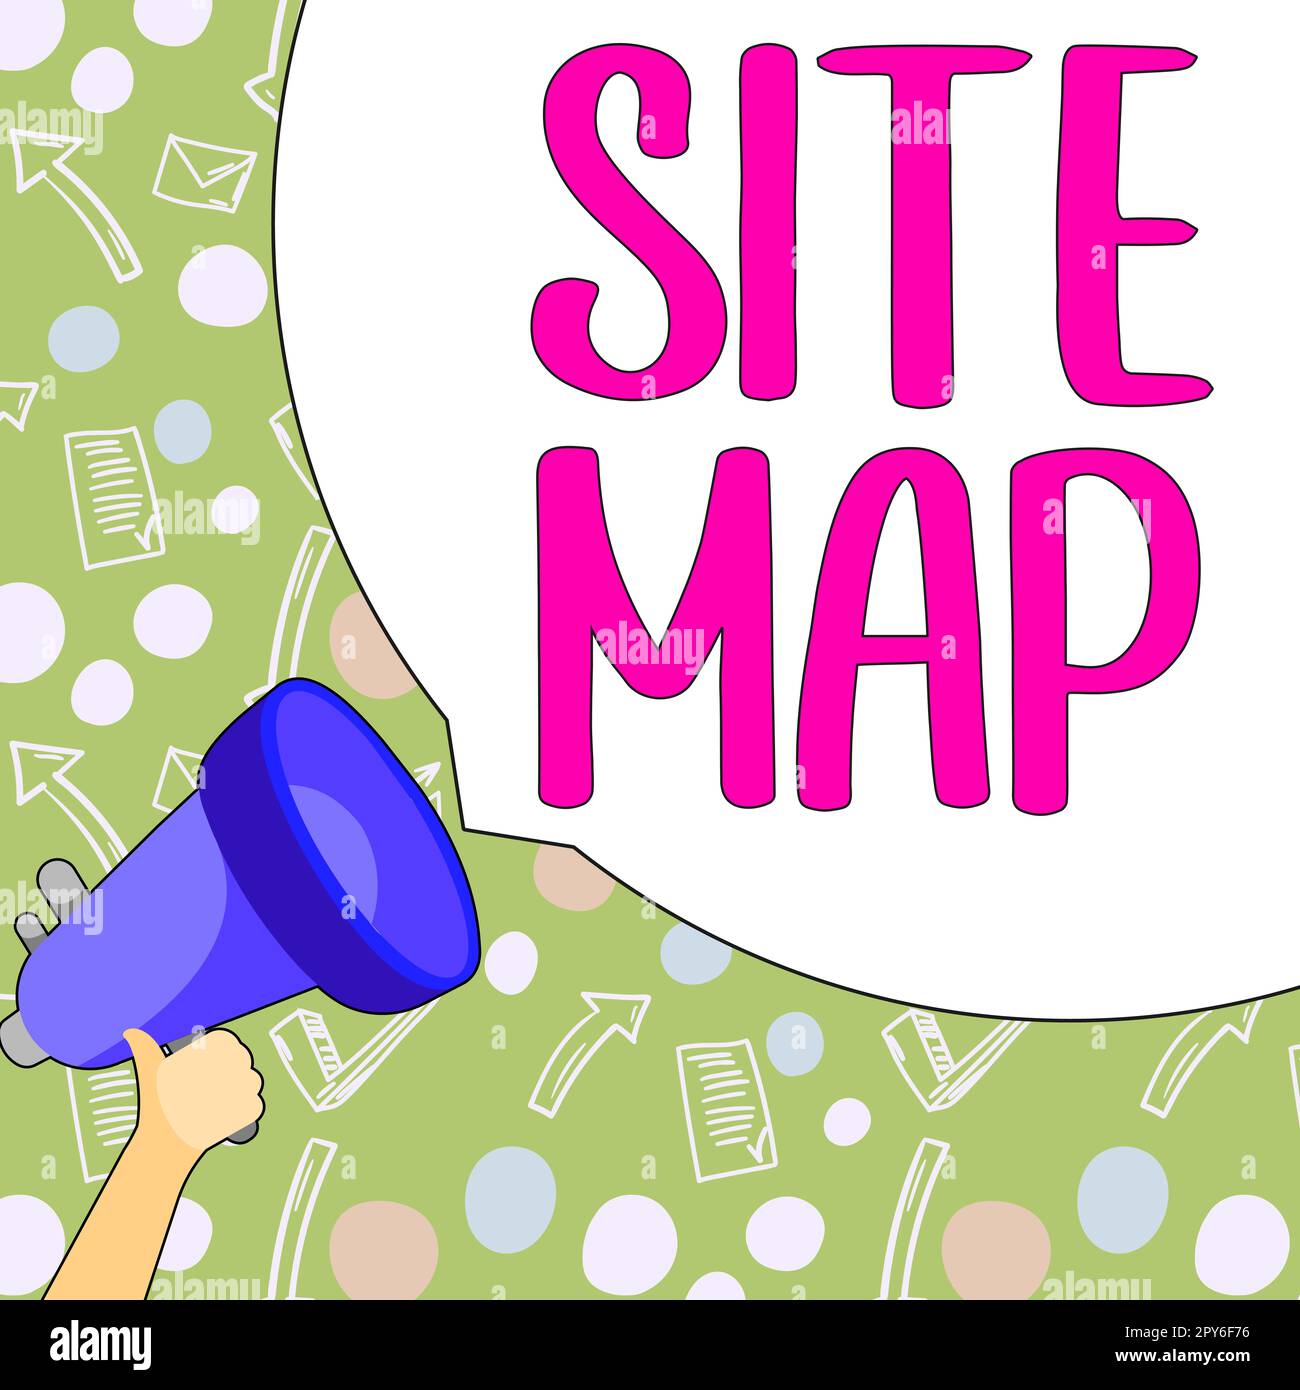 Konzeptionelle Darstellung der Sitemap. Geschäftsüberblick, der sowohl Benutzern als auch Suchmaschinen die Navigation auf der Website erleichtert Stockfoto